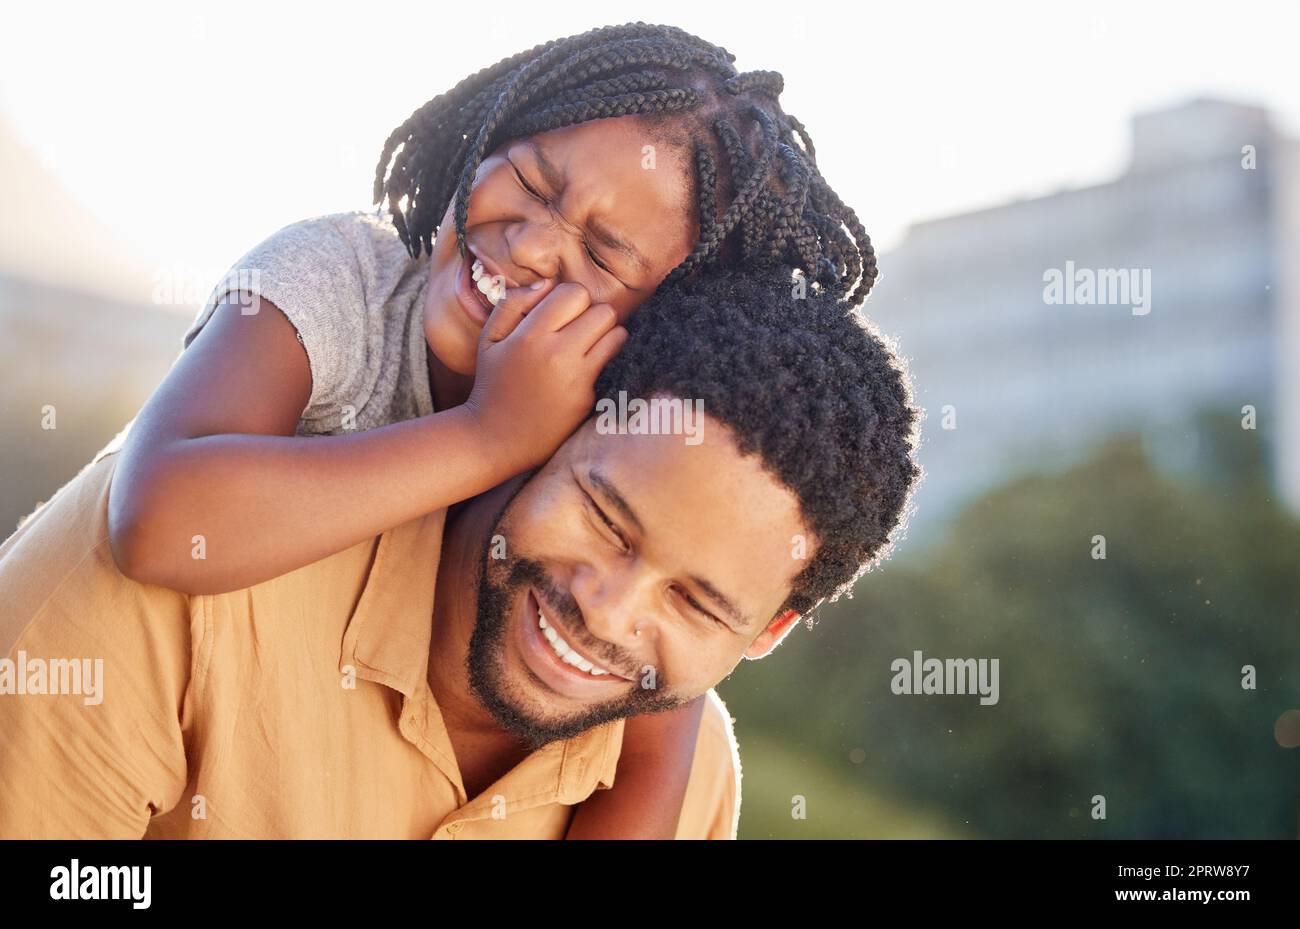 Glücklicher, schwarzer Vater und glückliche Tochter, die wieder fröhlich und freudig in die Natur hineinlächeln. Ein afrikanisches kleines Mädchen lächelt, lacht und genießt im Sommer draußen die Zeit mit dem fürsorglichen Vater Stockfoto